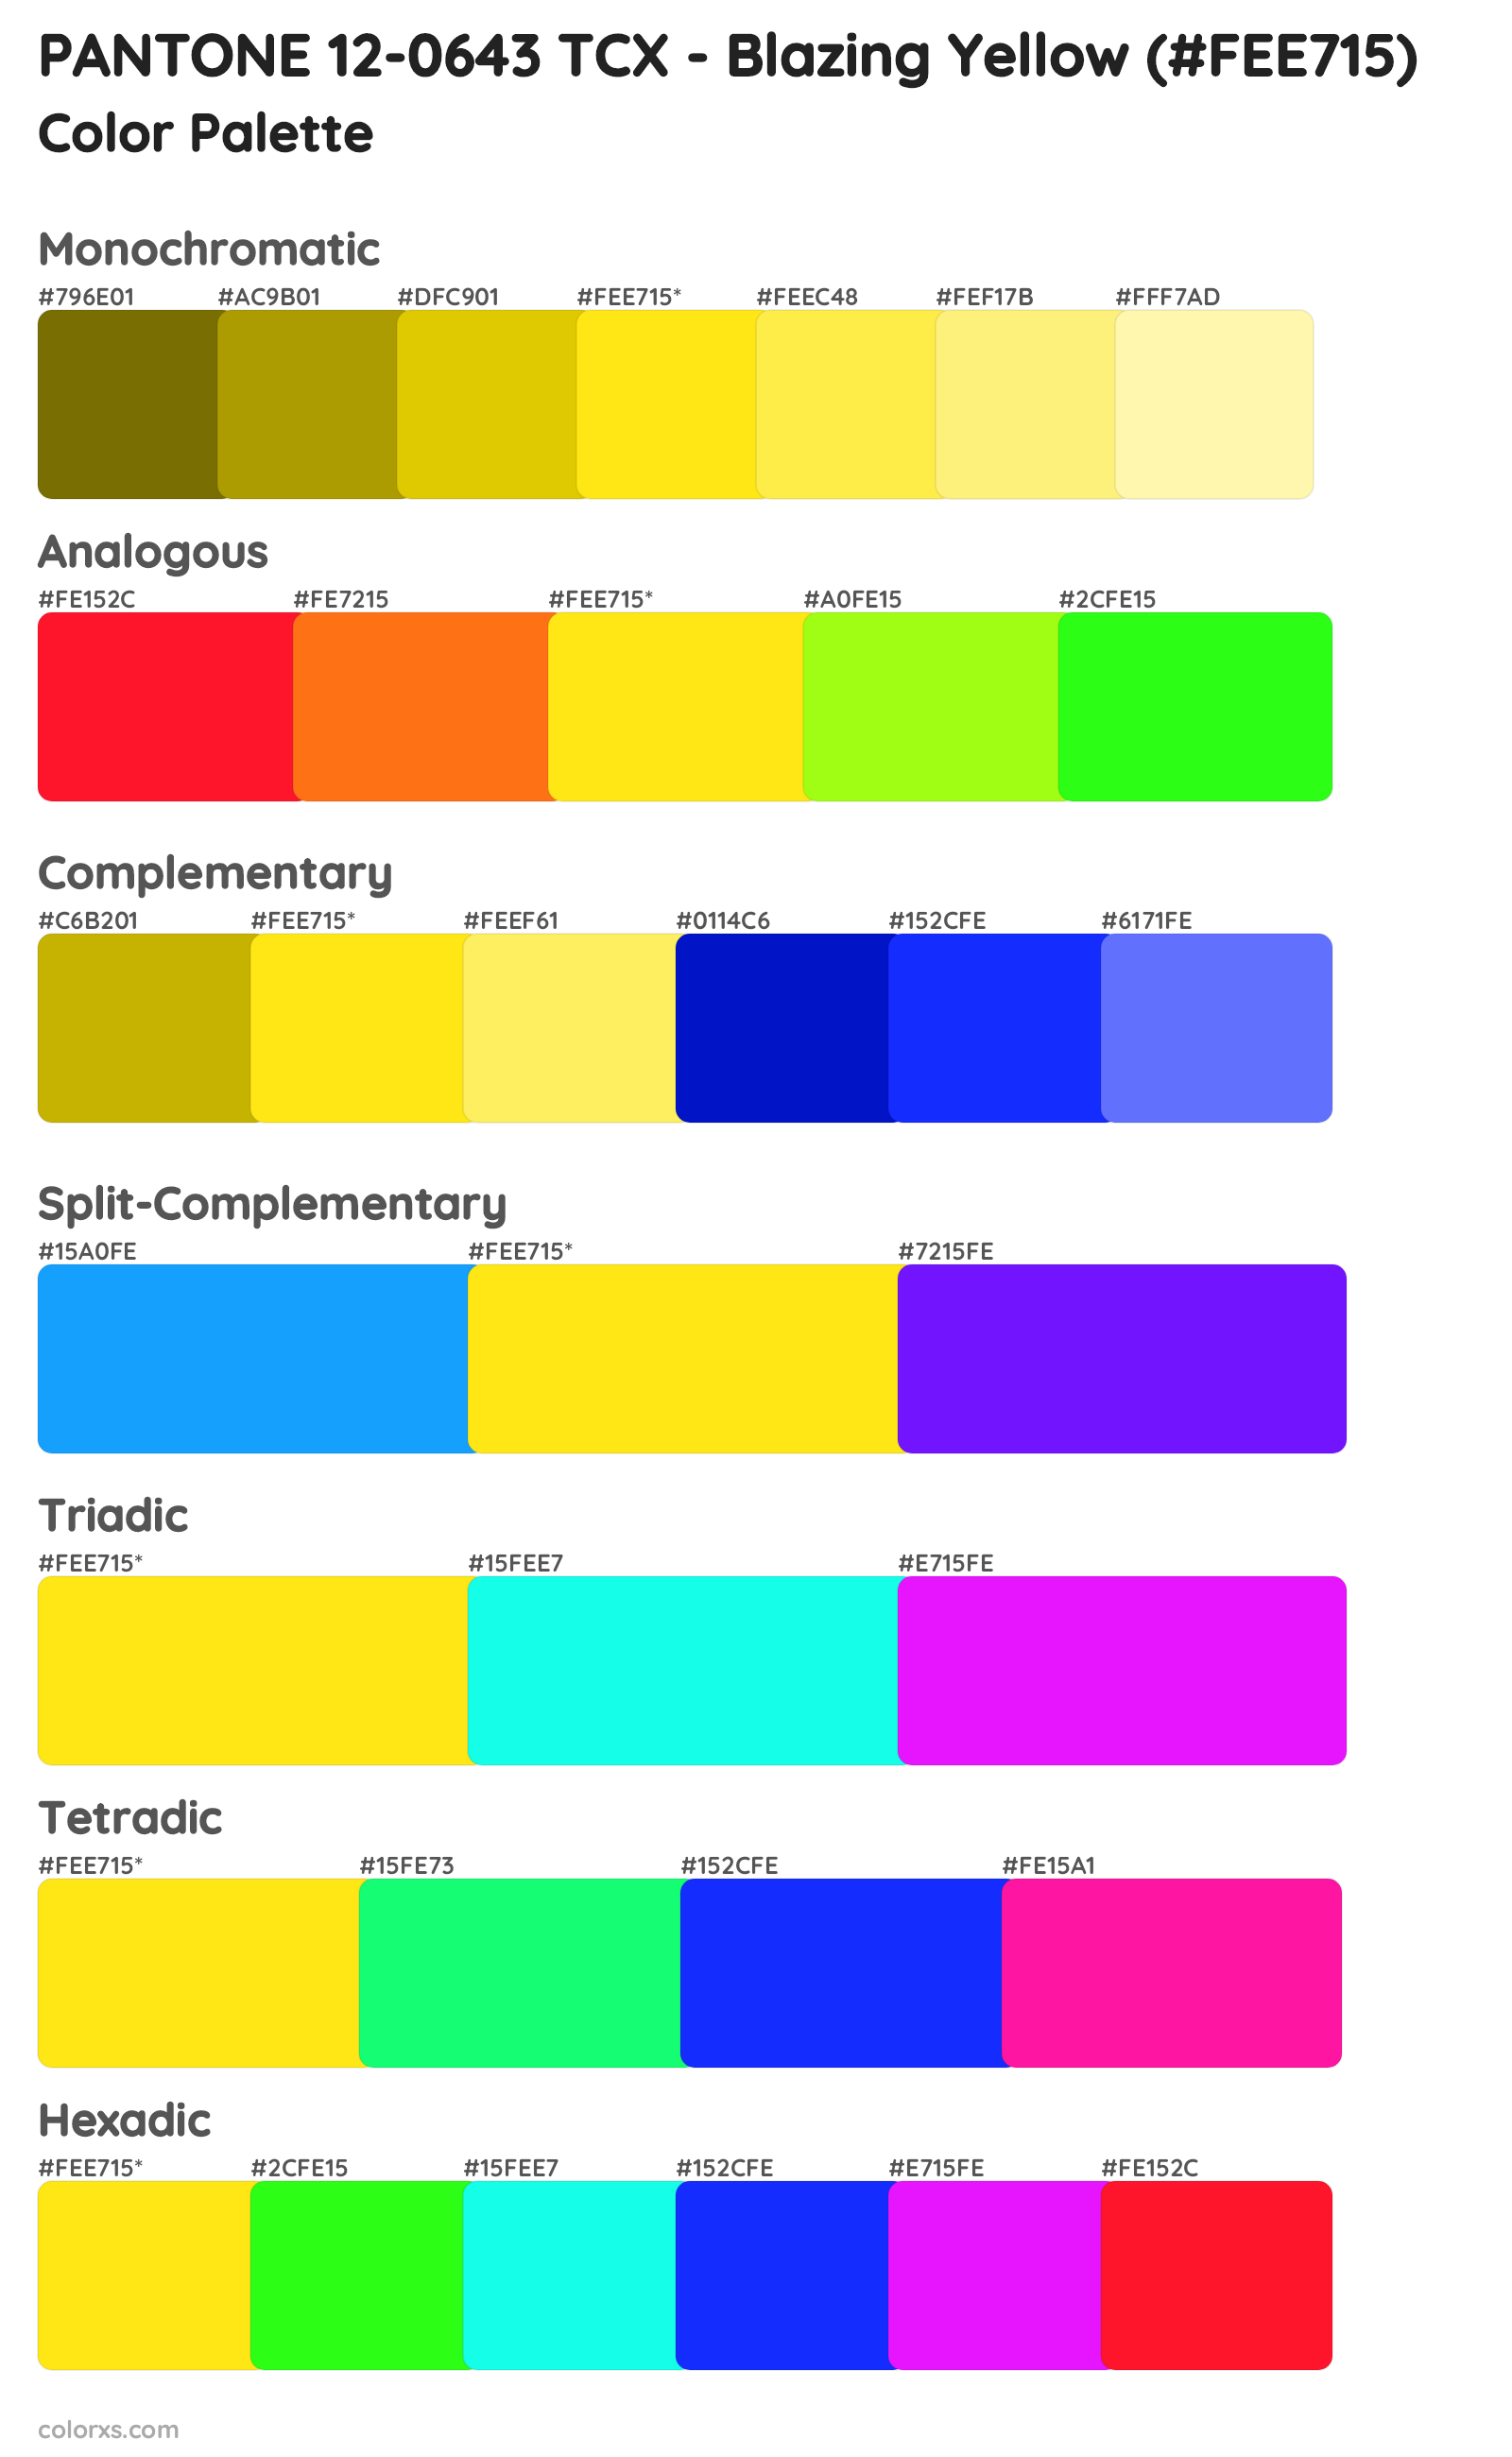 PANTONE 12-0643 TCX - Blazing Yellow Color Scheme Palettes